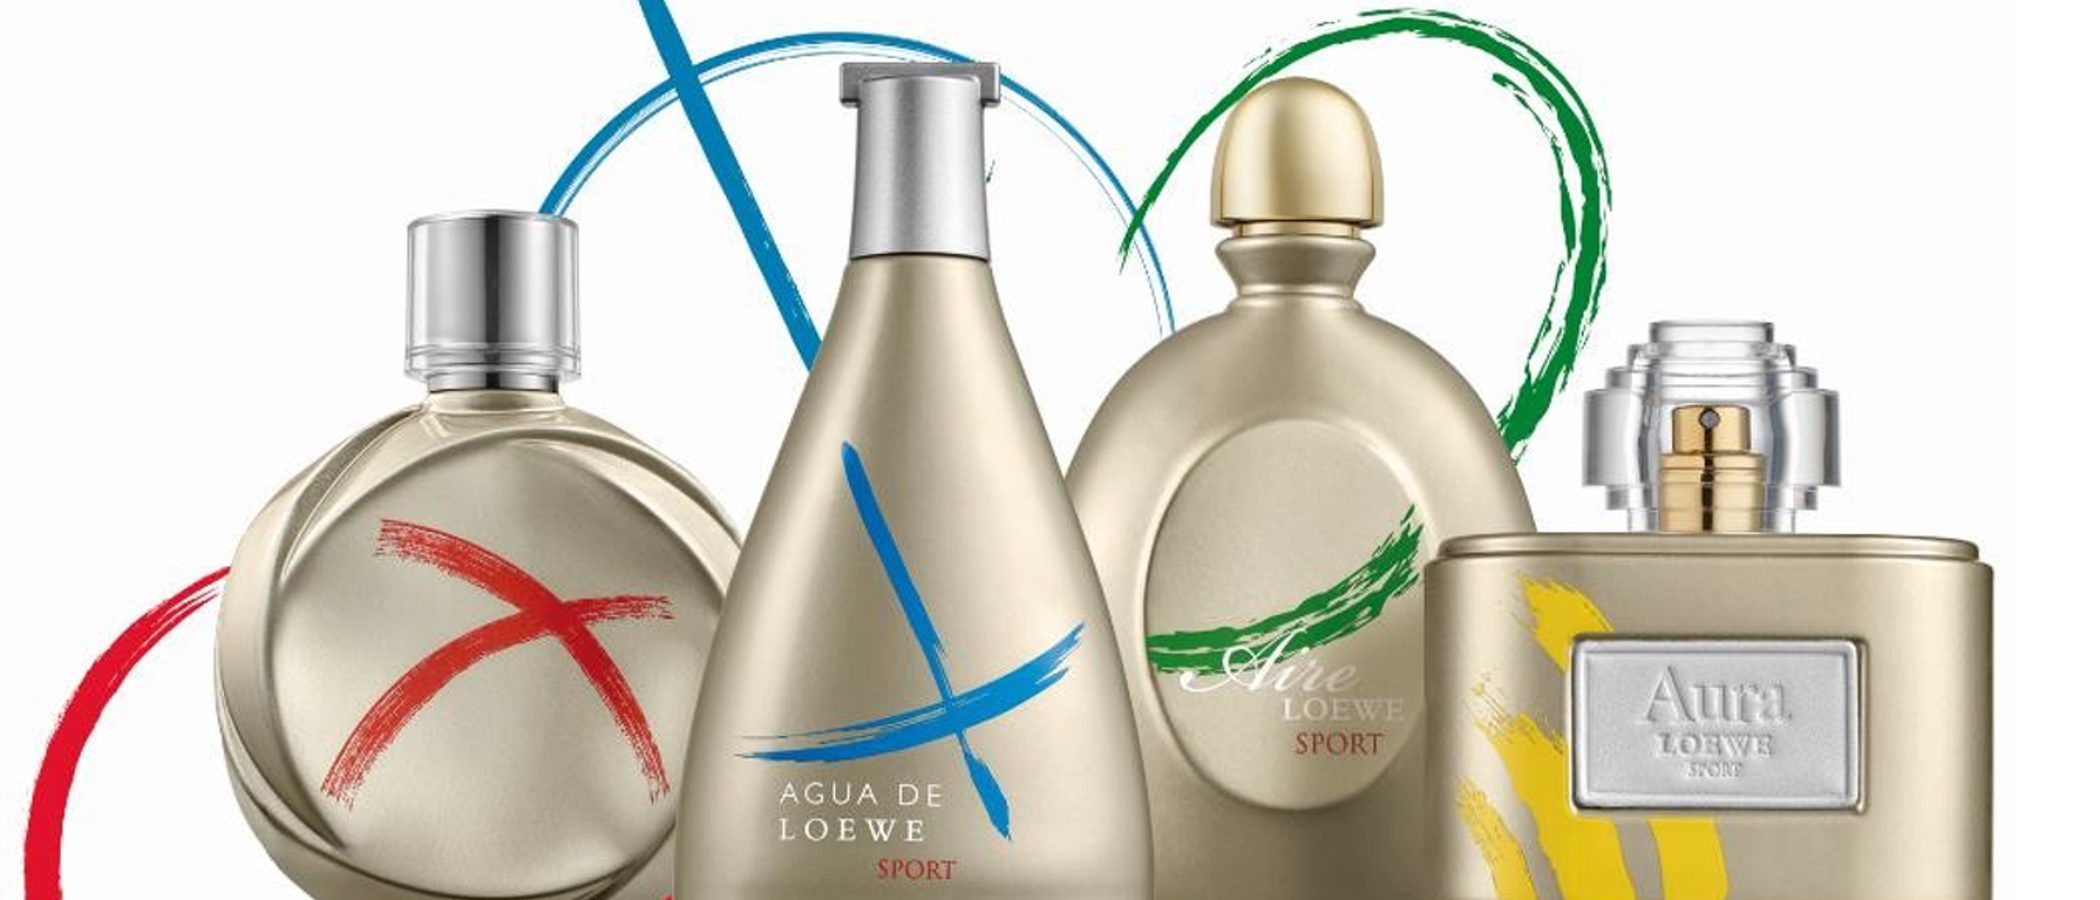 Loewe saca una colección de perfumes en honor a los Juegos Olímpicos de Río 2016